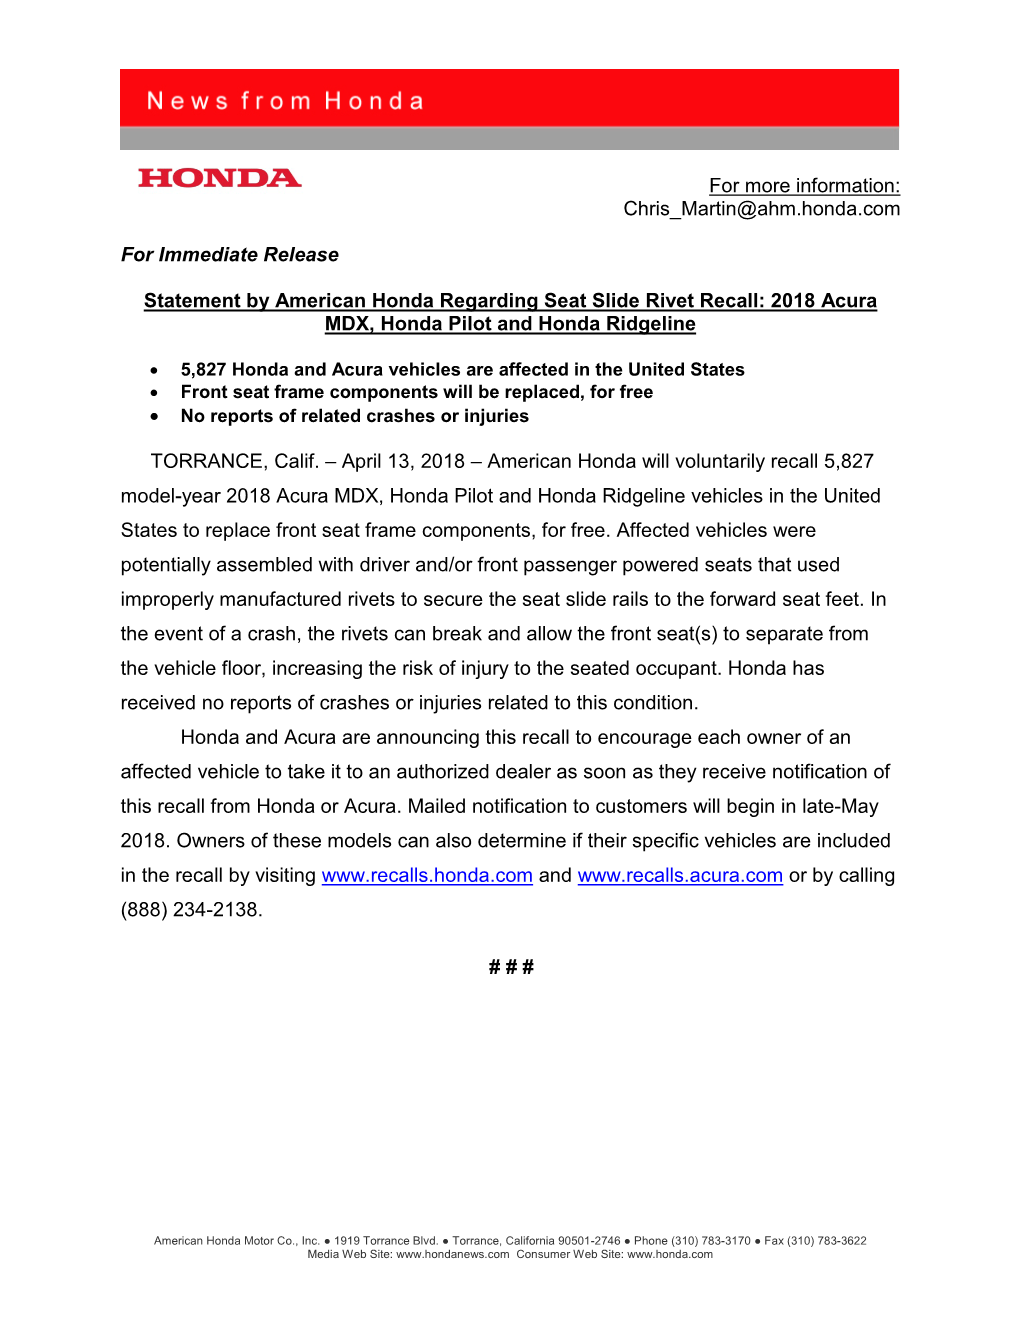 2018 Acura MDX, Honda Pilot and Honda Ridgeline